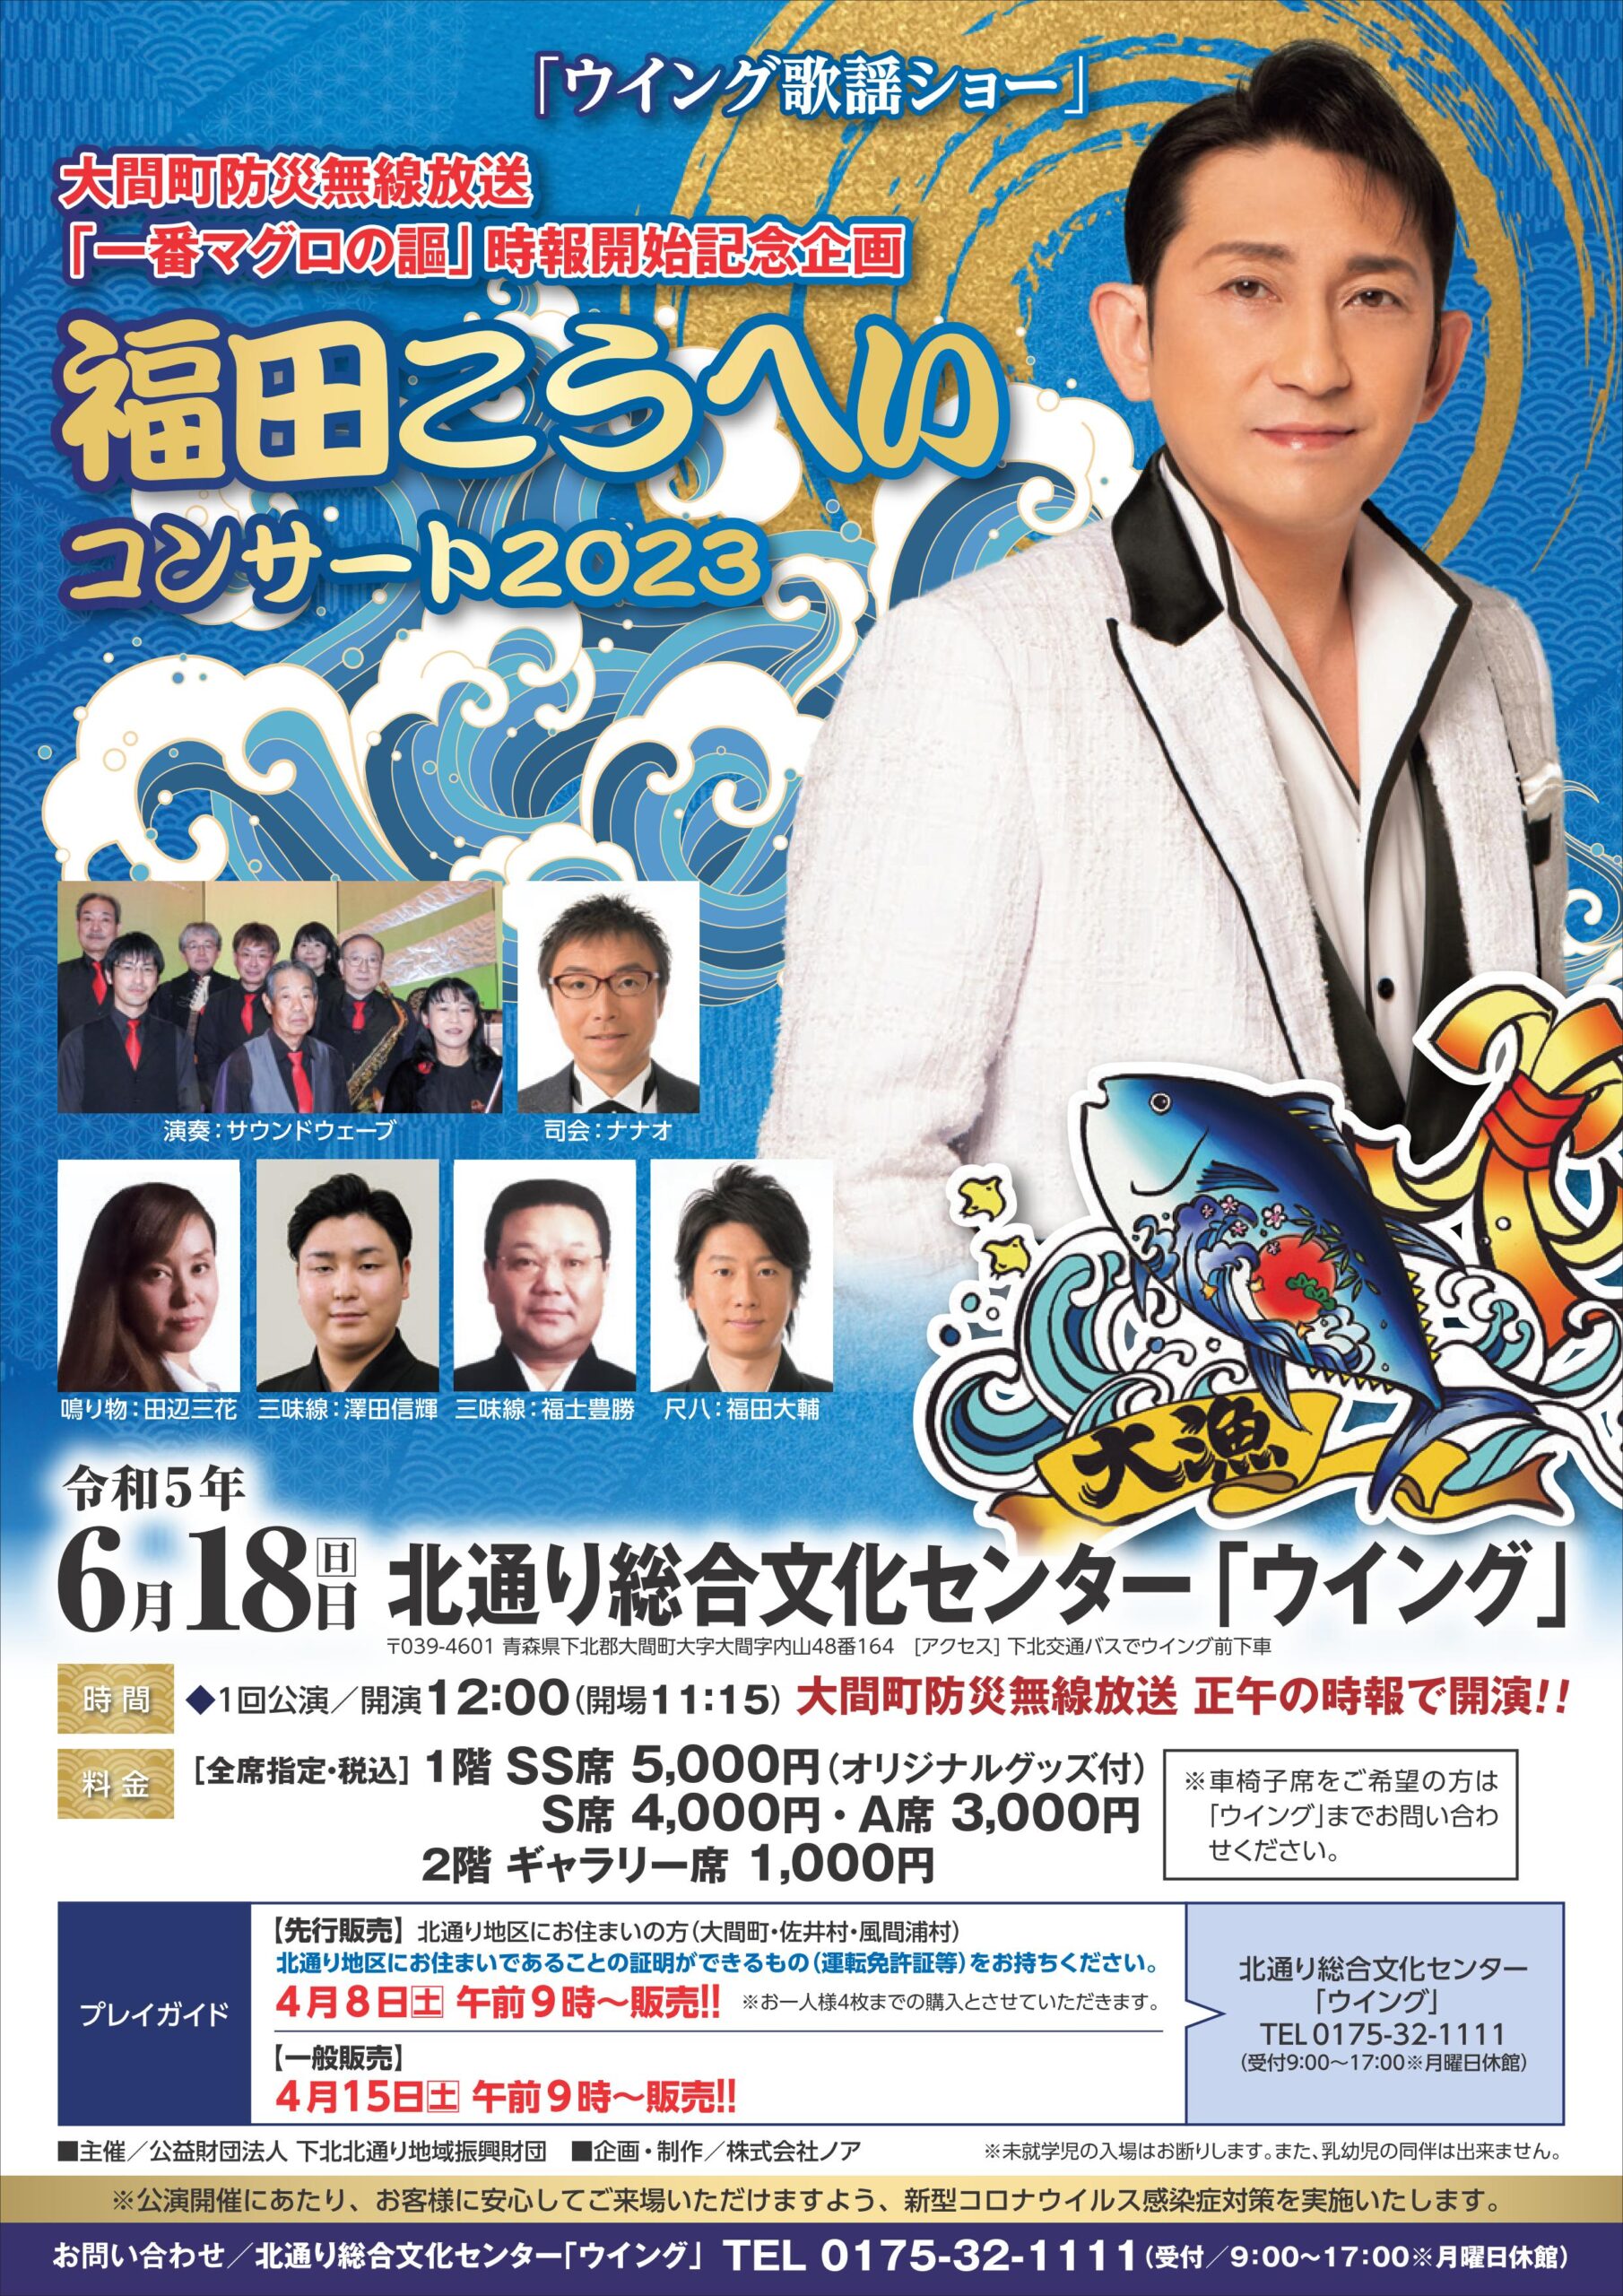 6月18日(日)、大間町で「福田こうへいコンサート2023」開催決定